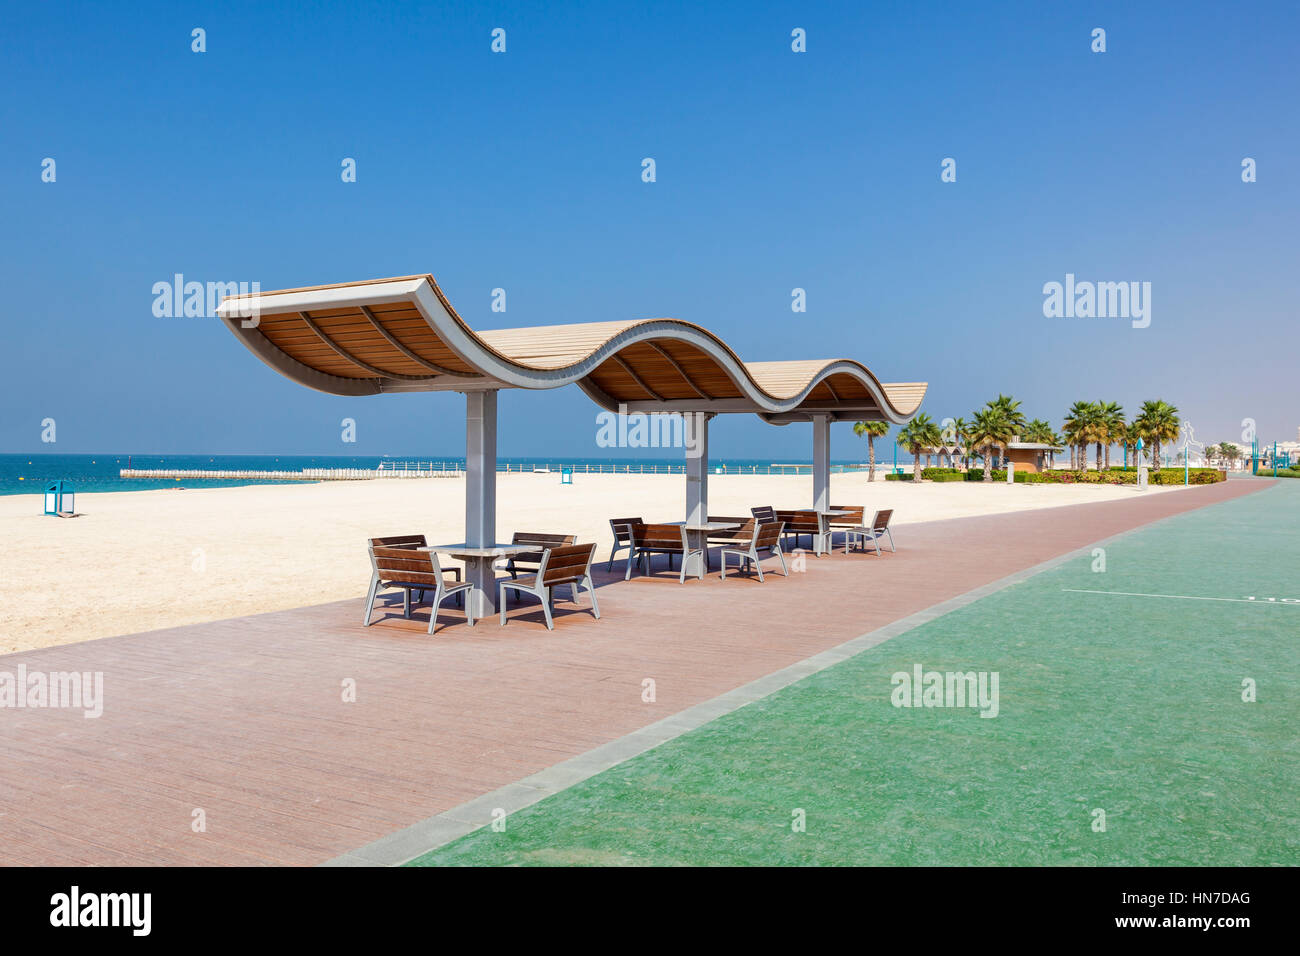 Esecuzione di linea sul Umm Suqeim spiaggia pubblica a Dubai. Emirati Arabi Uniti, Medio Oriente Foto Stock